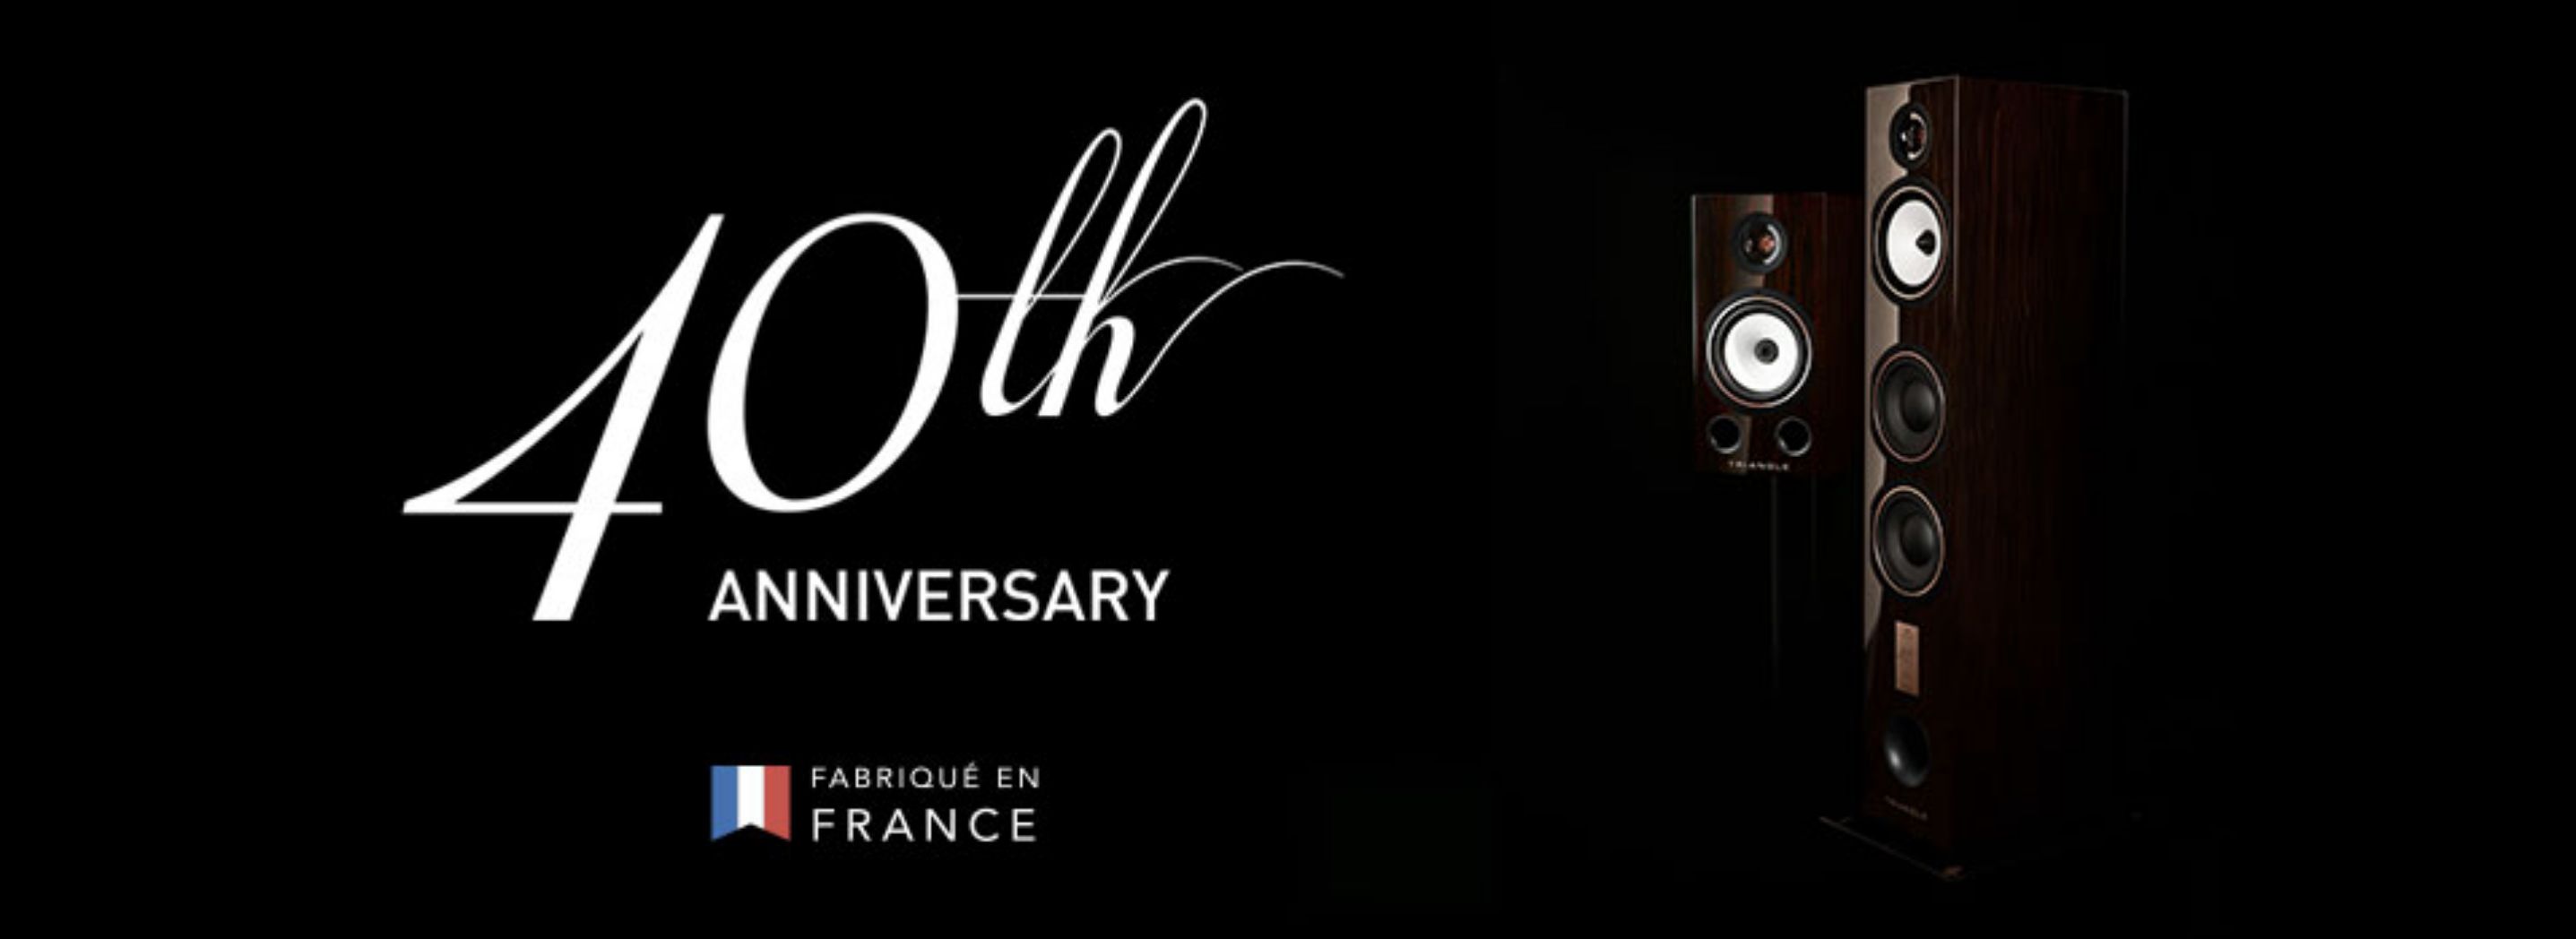 Triangle firar 40 år som högtalartillverkare och släpper exklusiva jubileumsmodeller!